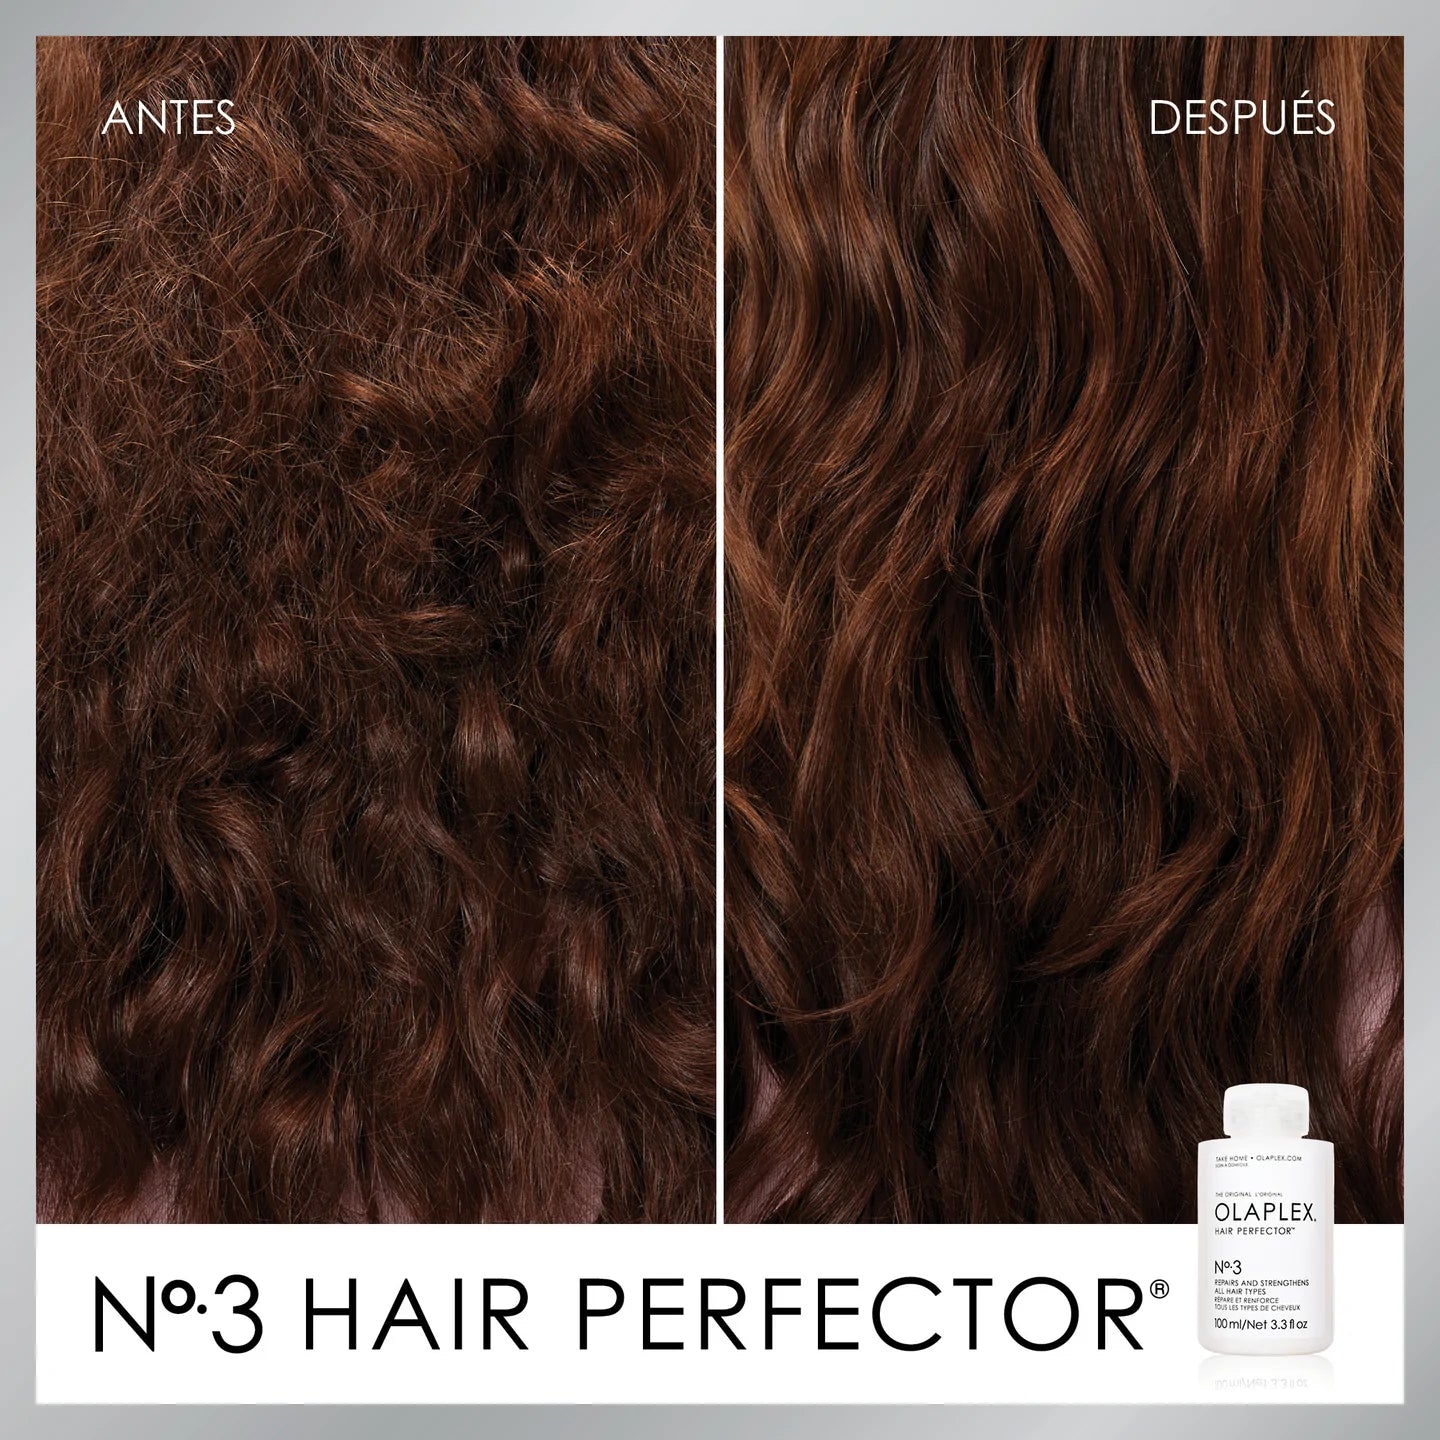 Olaplex Hair Perfector Nº3